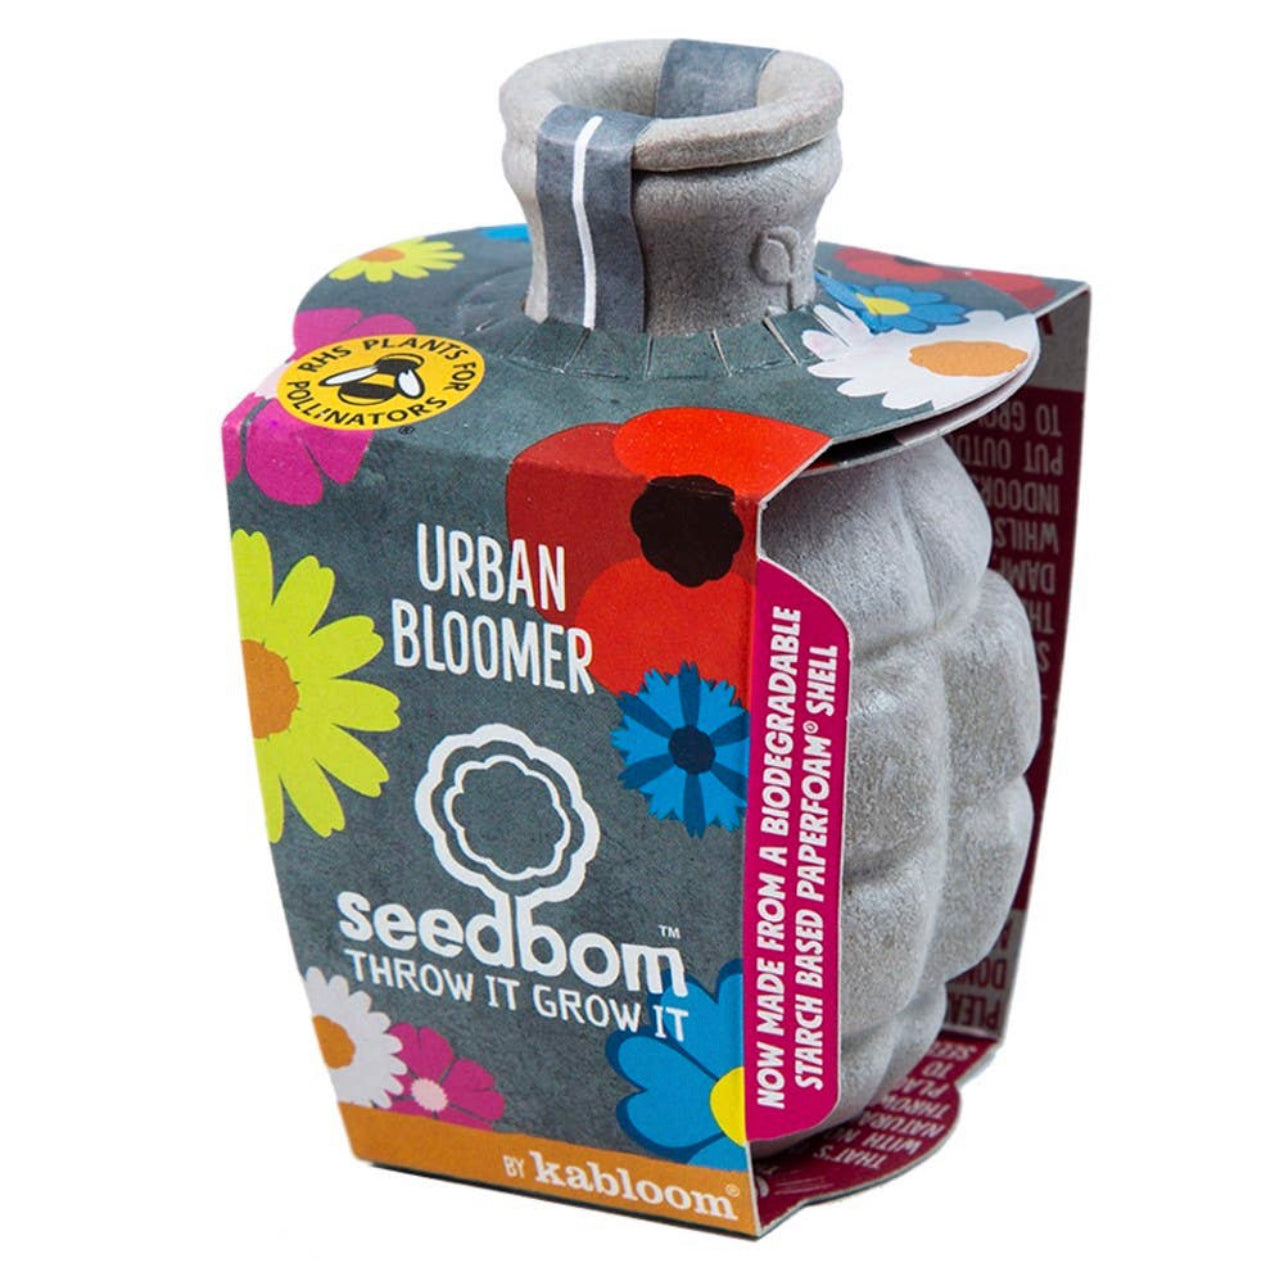 Kabloom - Urban Bloomer Seedbom